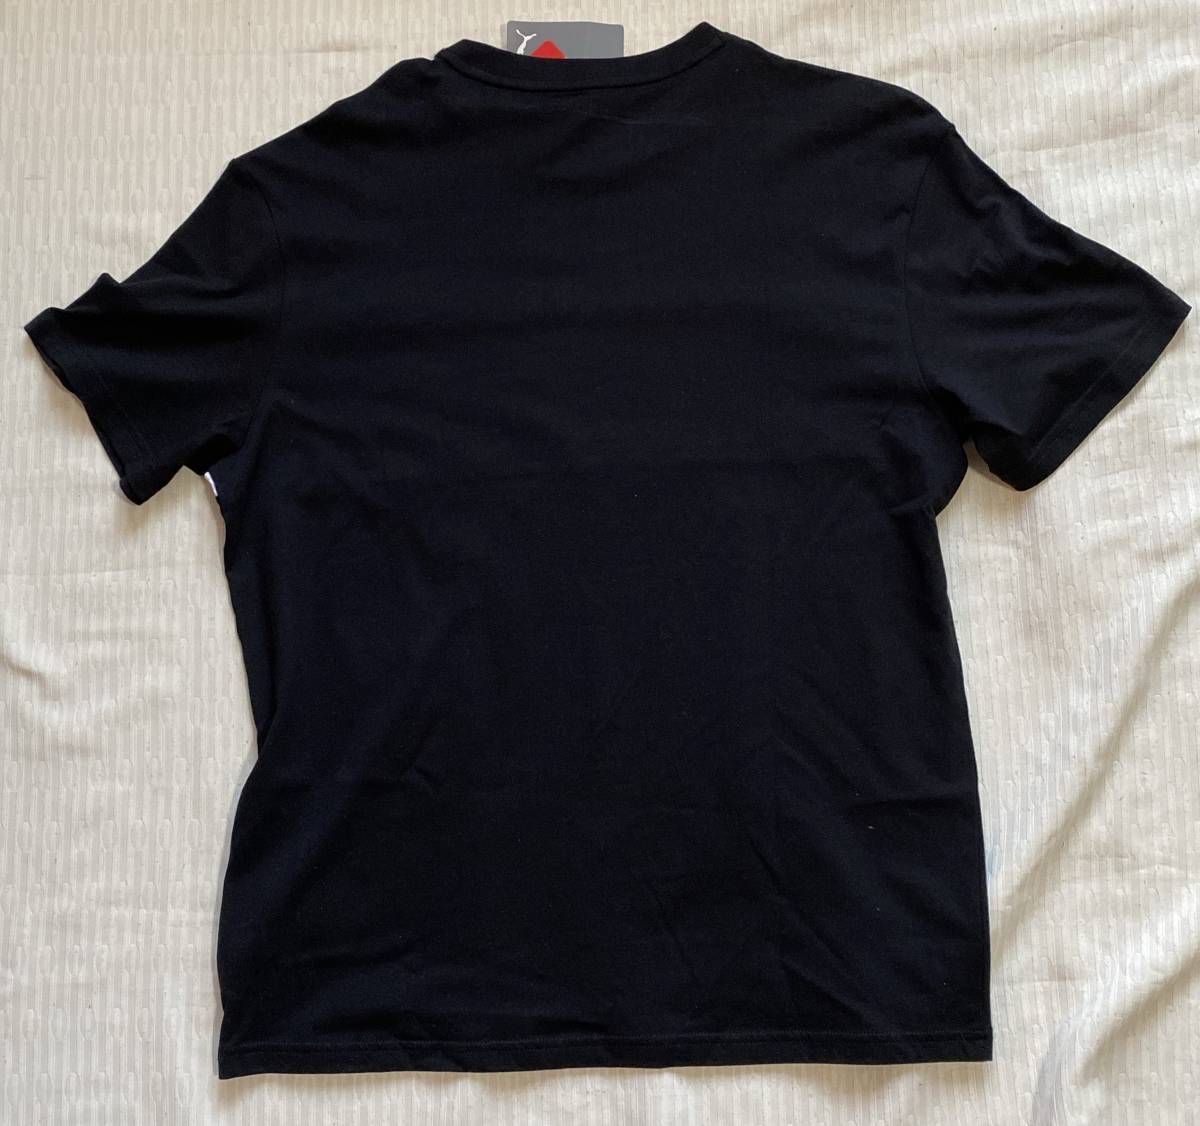 Tシャツ Mサイズ プーマ/PUMA 黒色系柄文字 丸首半袖 綿100% リラックスフィット型◎◎未使用品_画像6